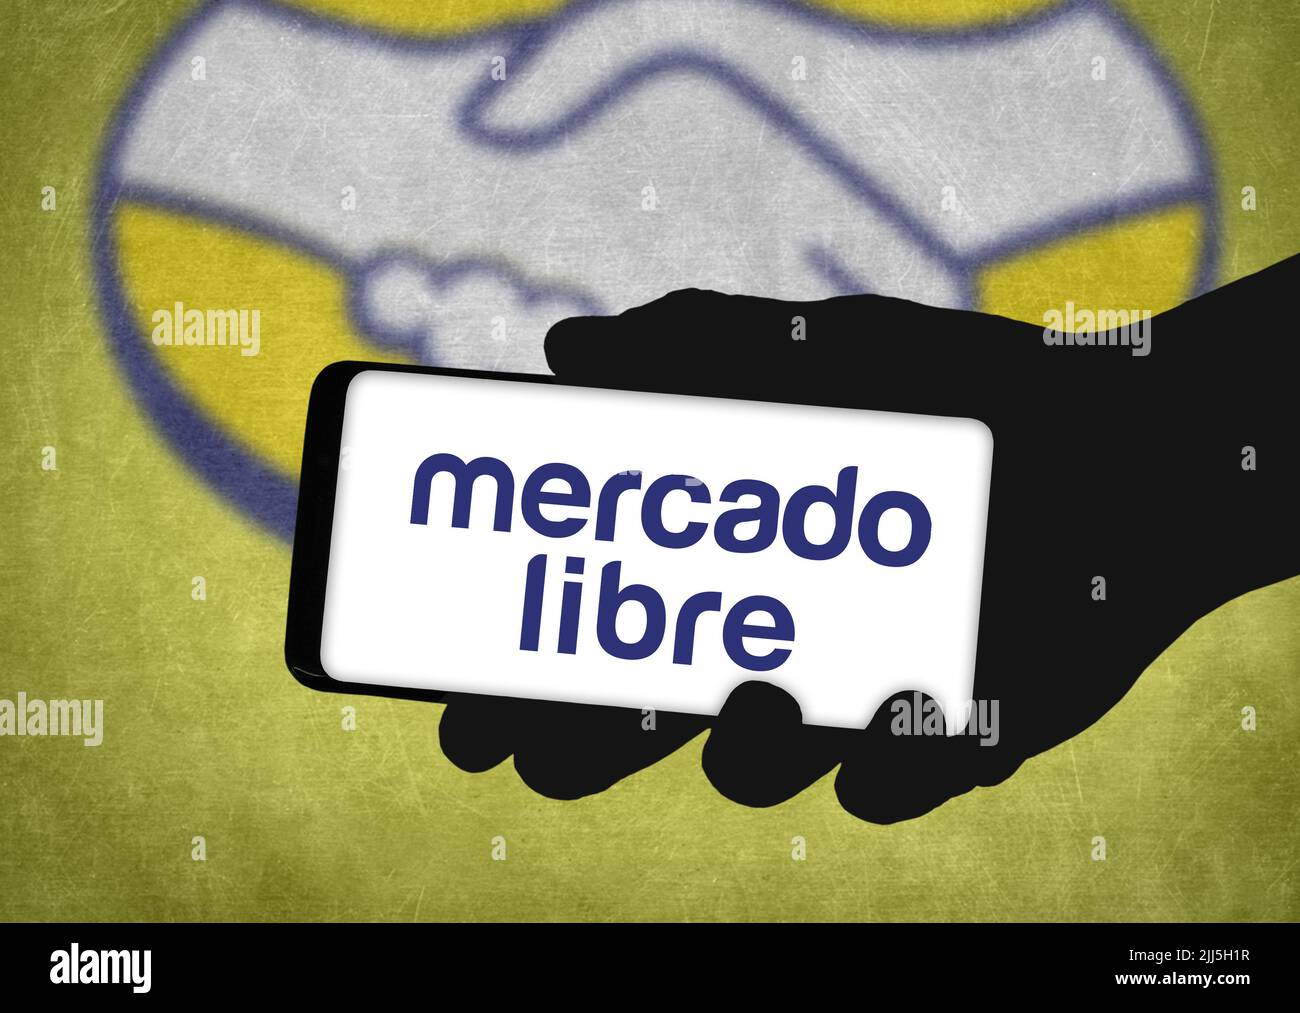 Mercado Libre company logo on mobile device Stock Photo